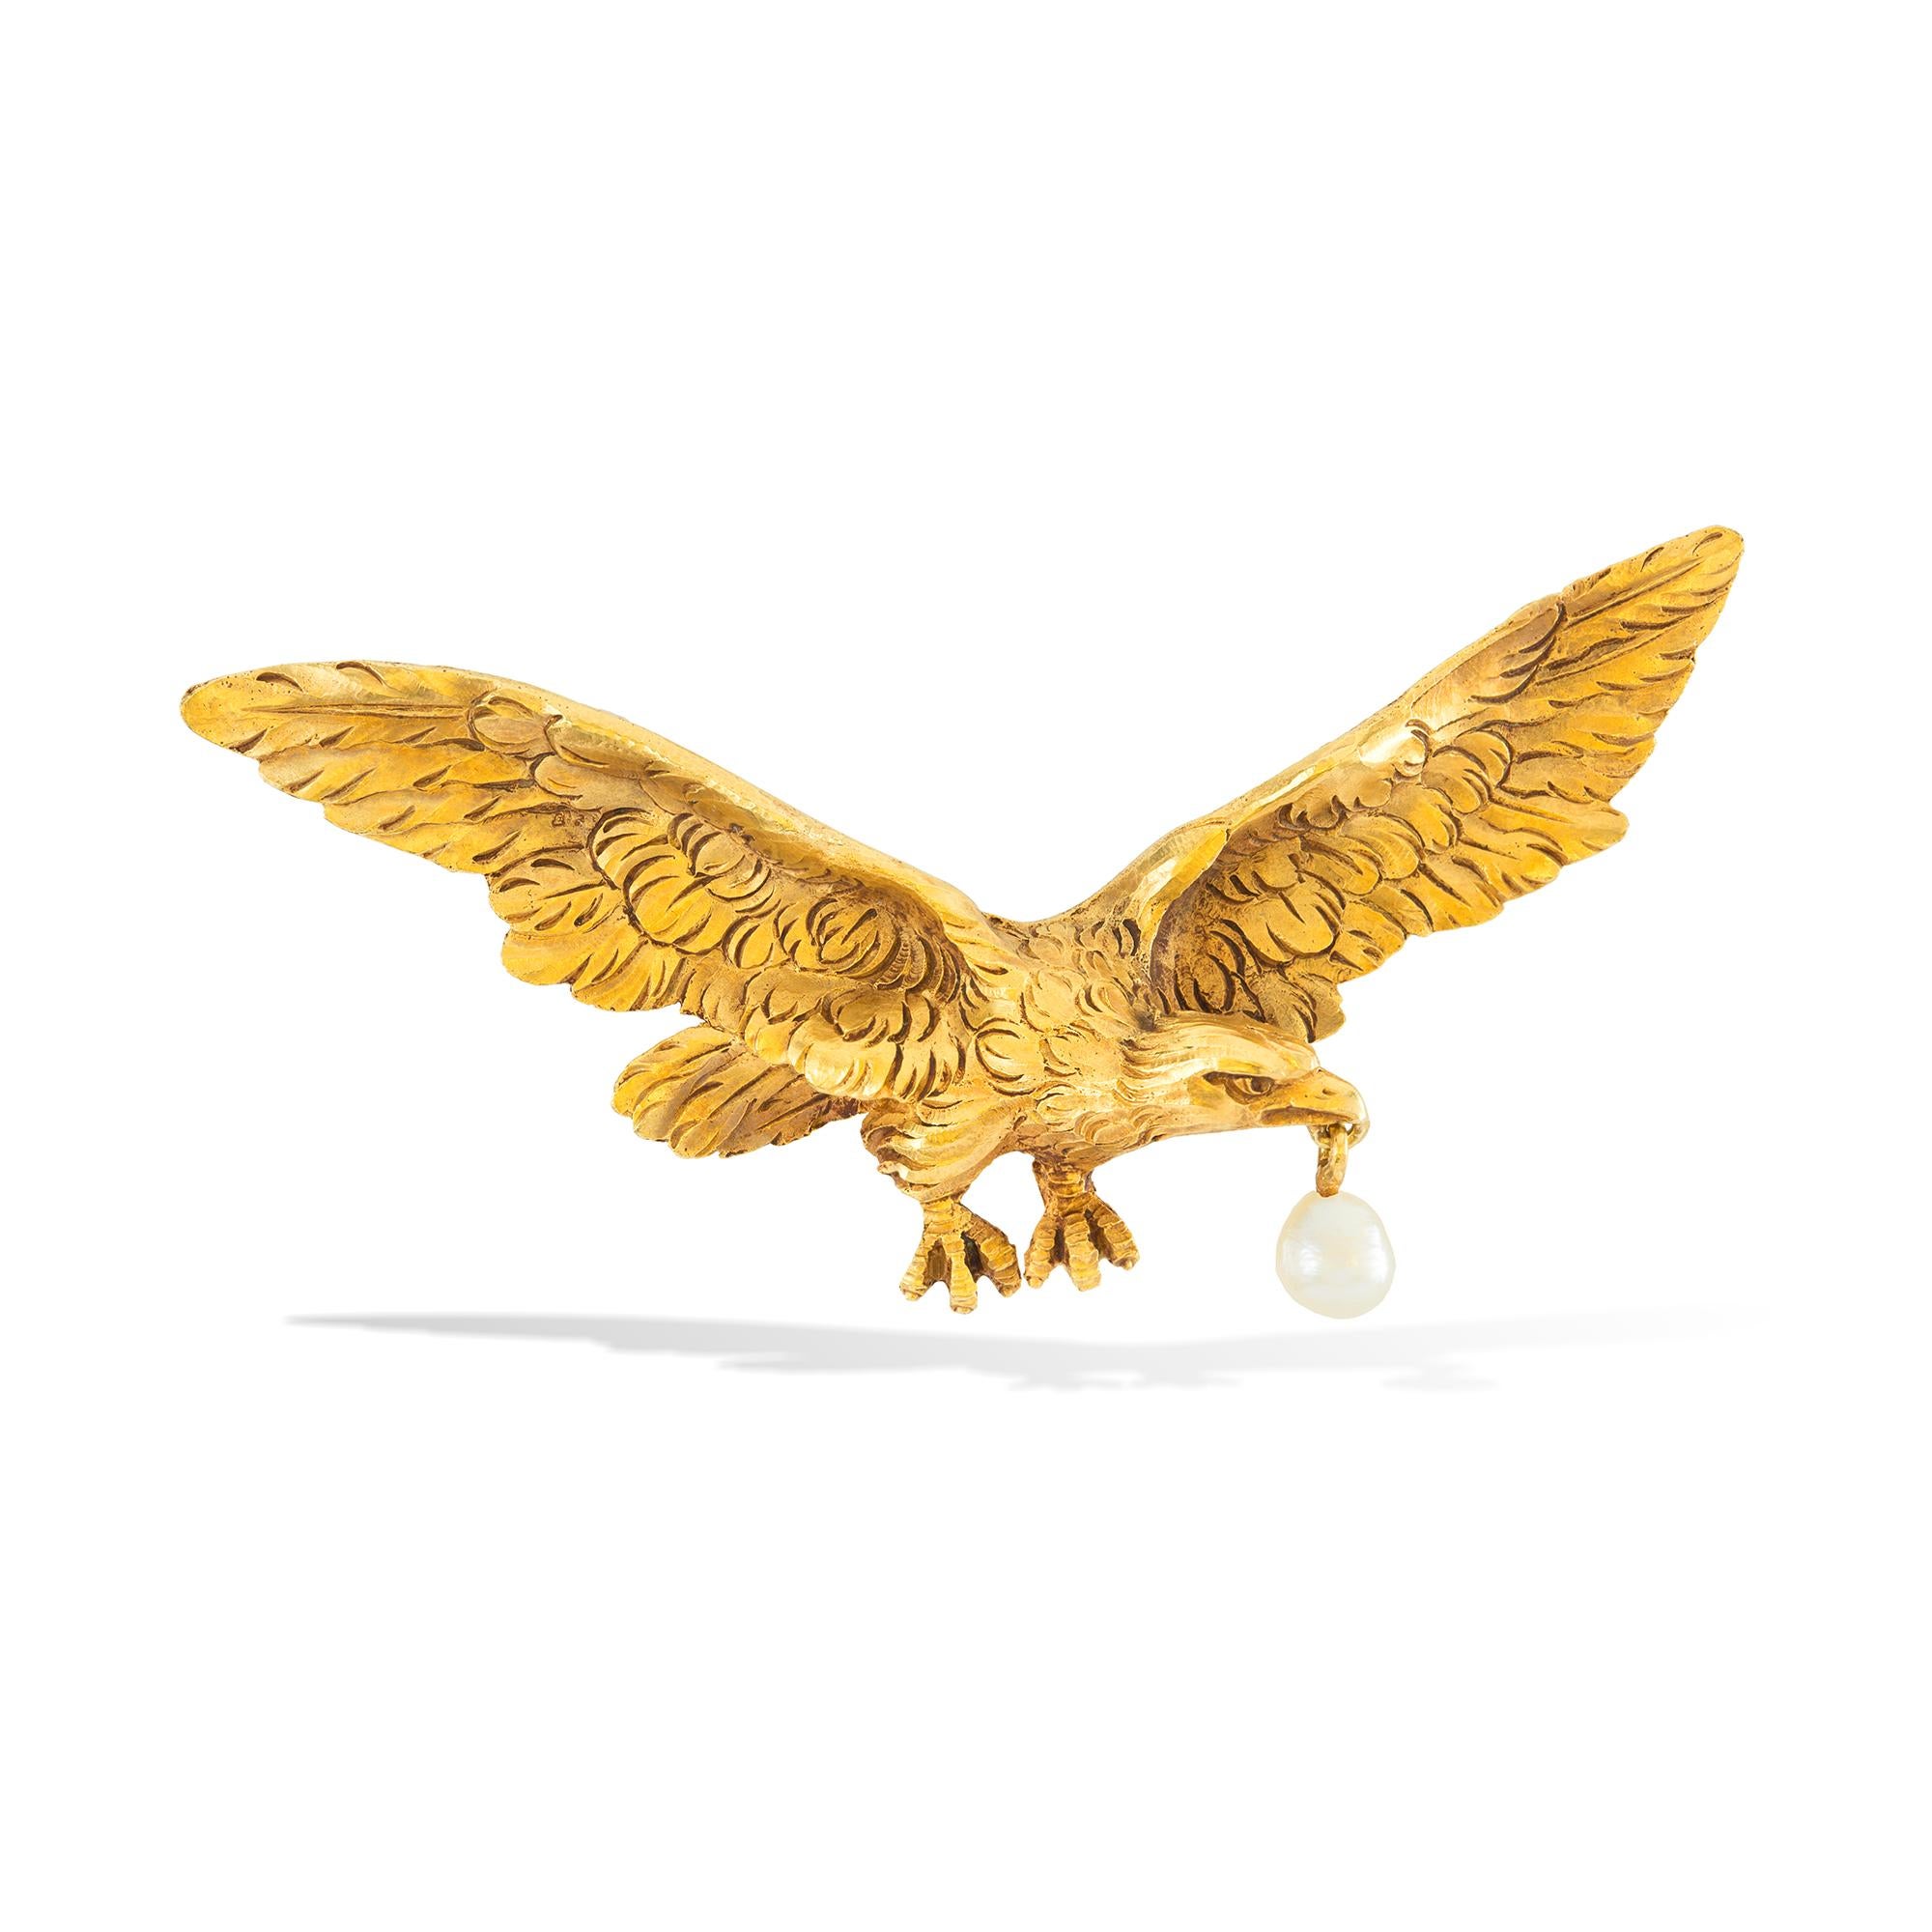 eagle hallmark on gold